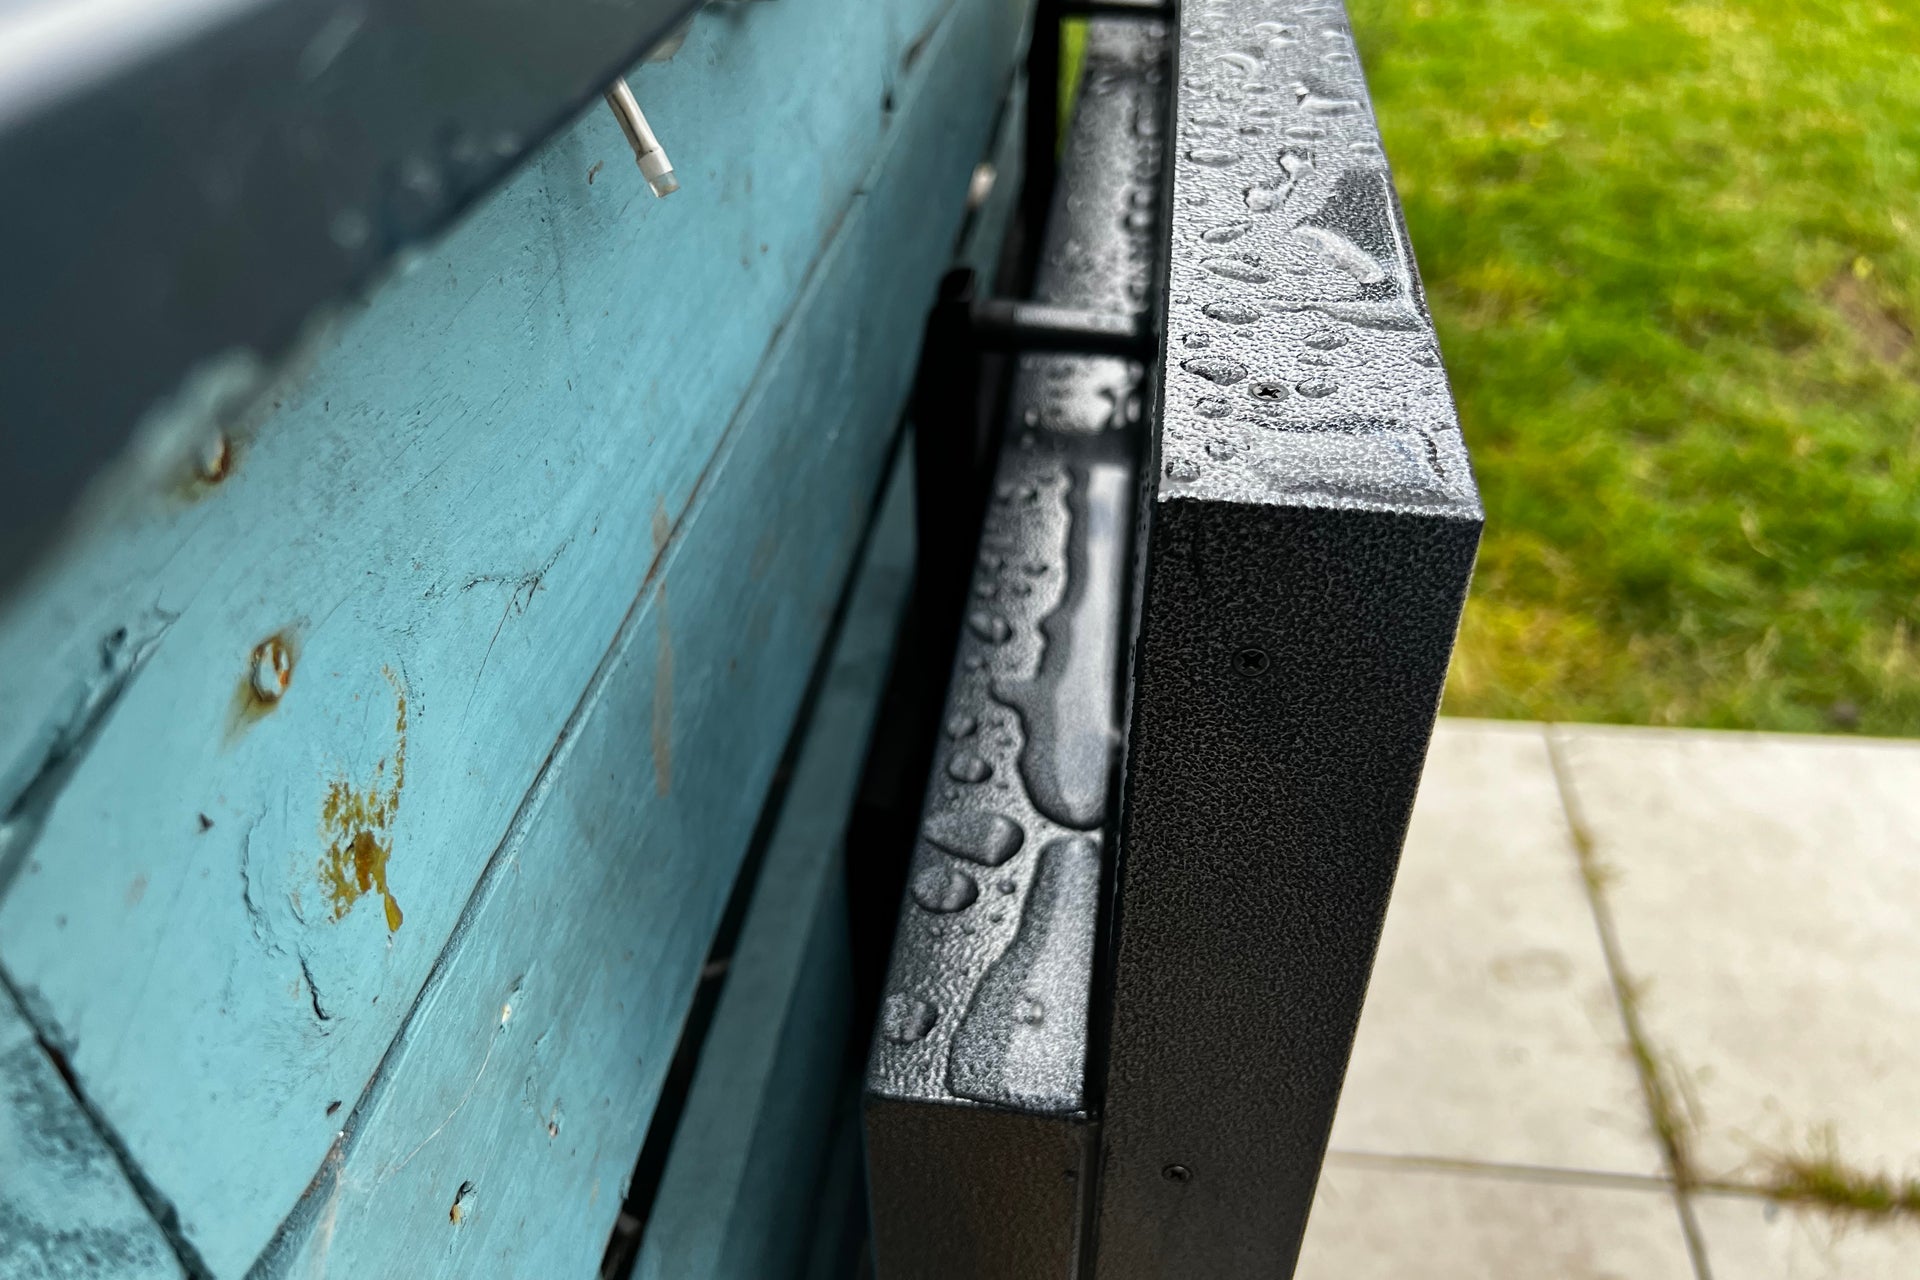 Sylvox 43-Zoll Deck Pro Outdoor-Fernseher nass nach Regen